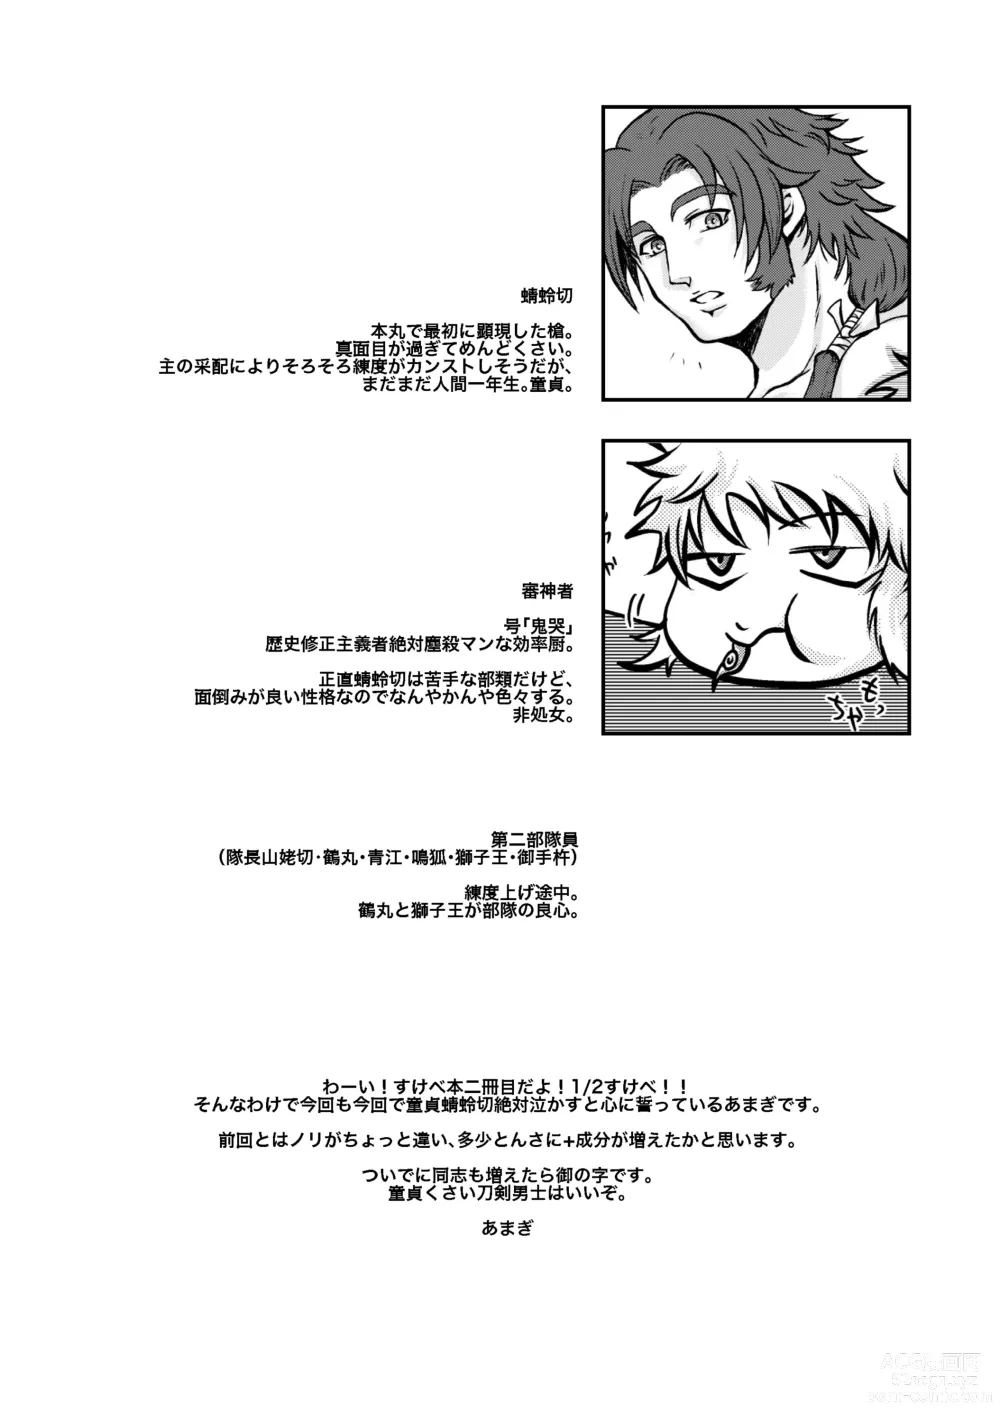 Page 4 of doujinshi Hitori Esu Chino Yari Kata